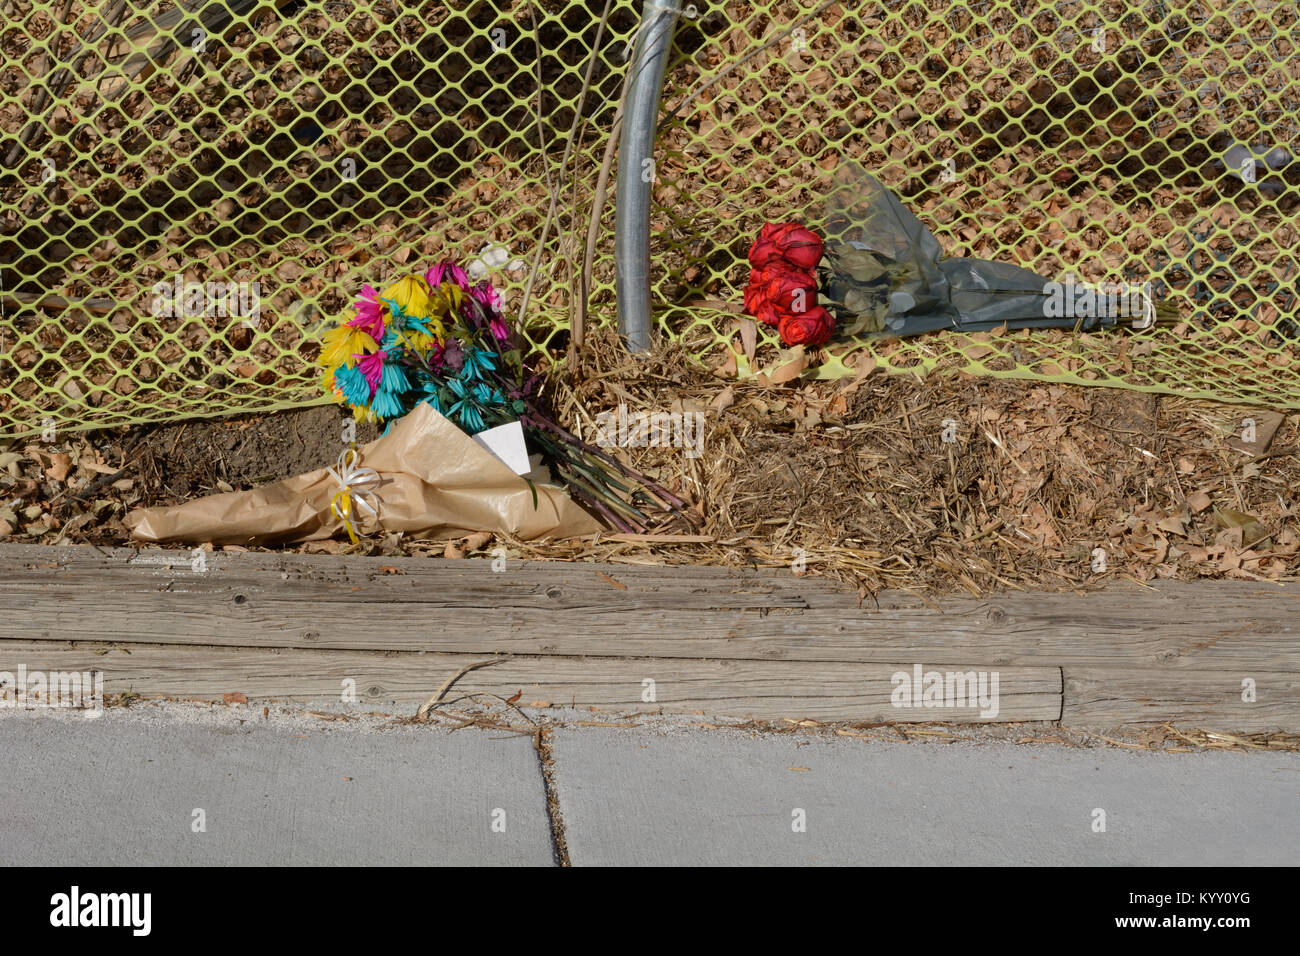 Memorial de ramos de flores a la izquierda al lado de la carretera donde  persona muertos por accidente de tráfico con chofer bajo la influencia  Fotografía de stock - Alamy